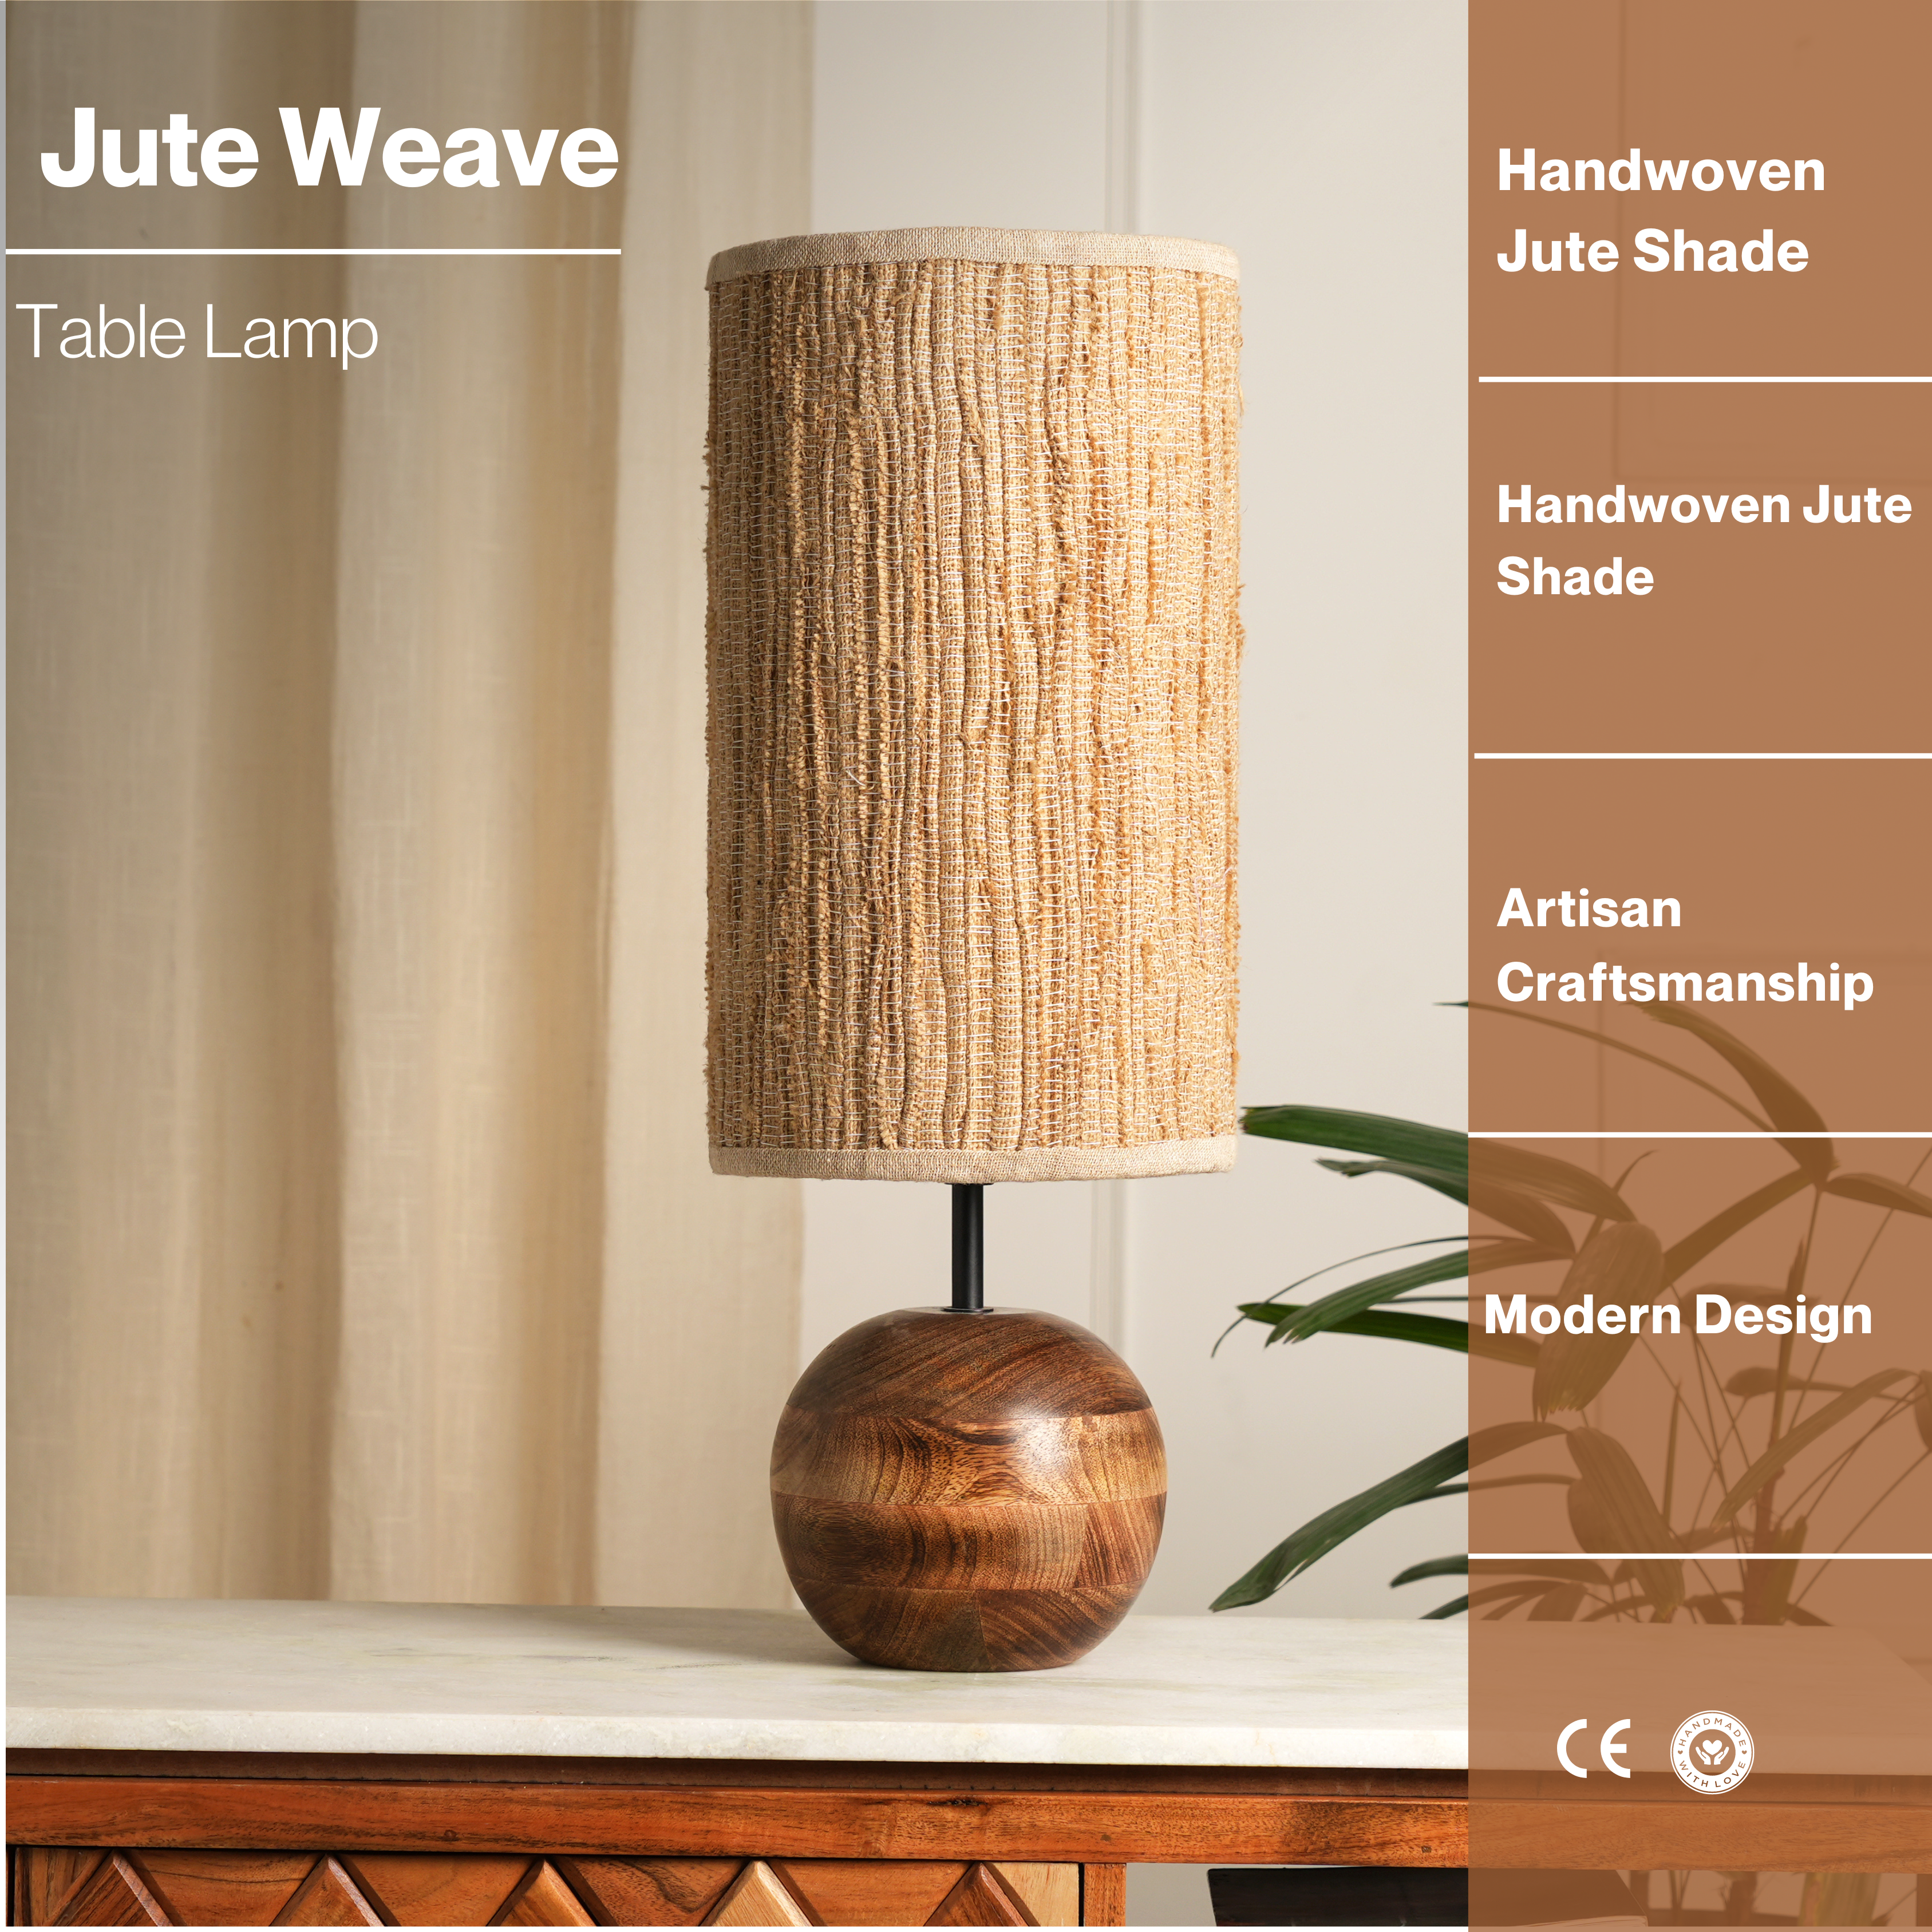 Jute Weave Lamp